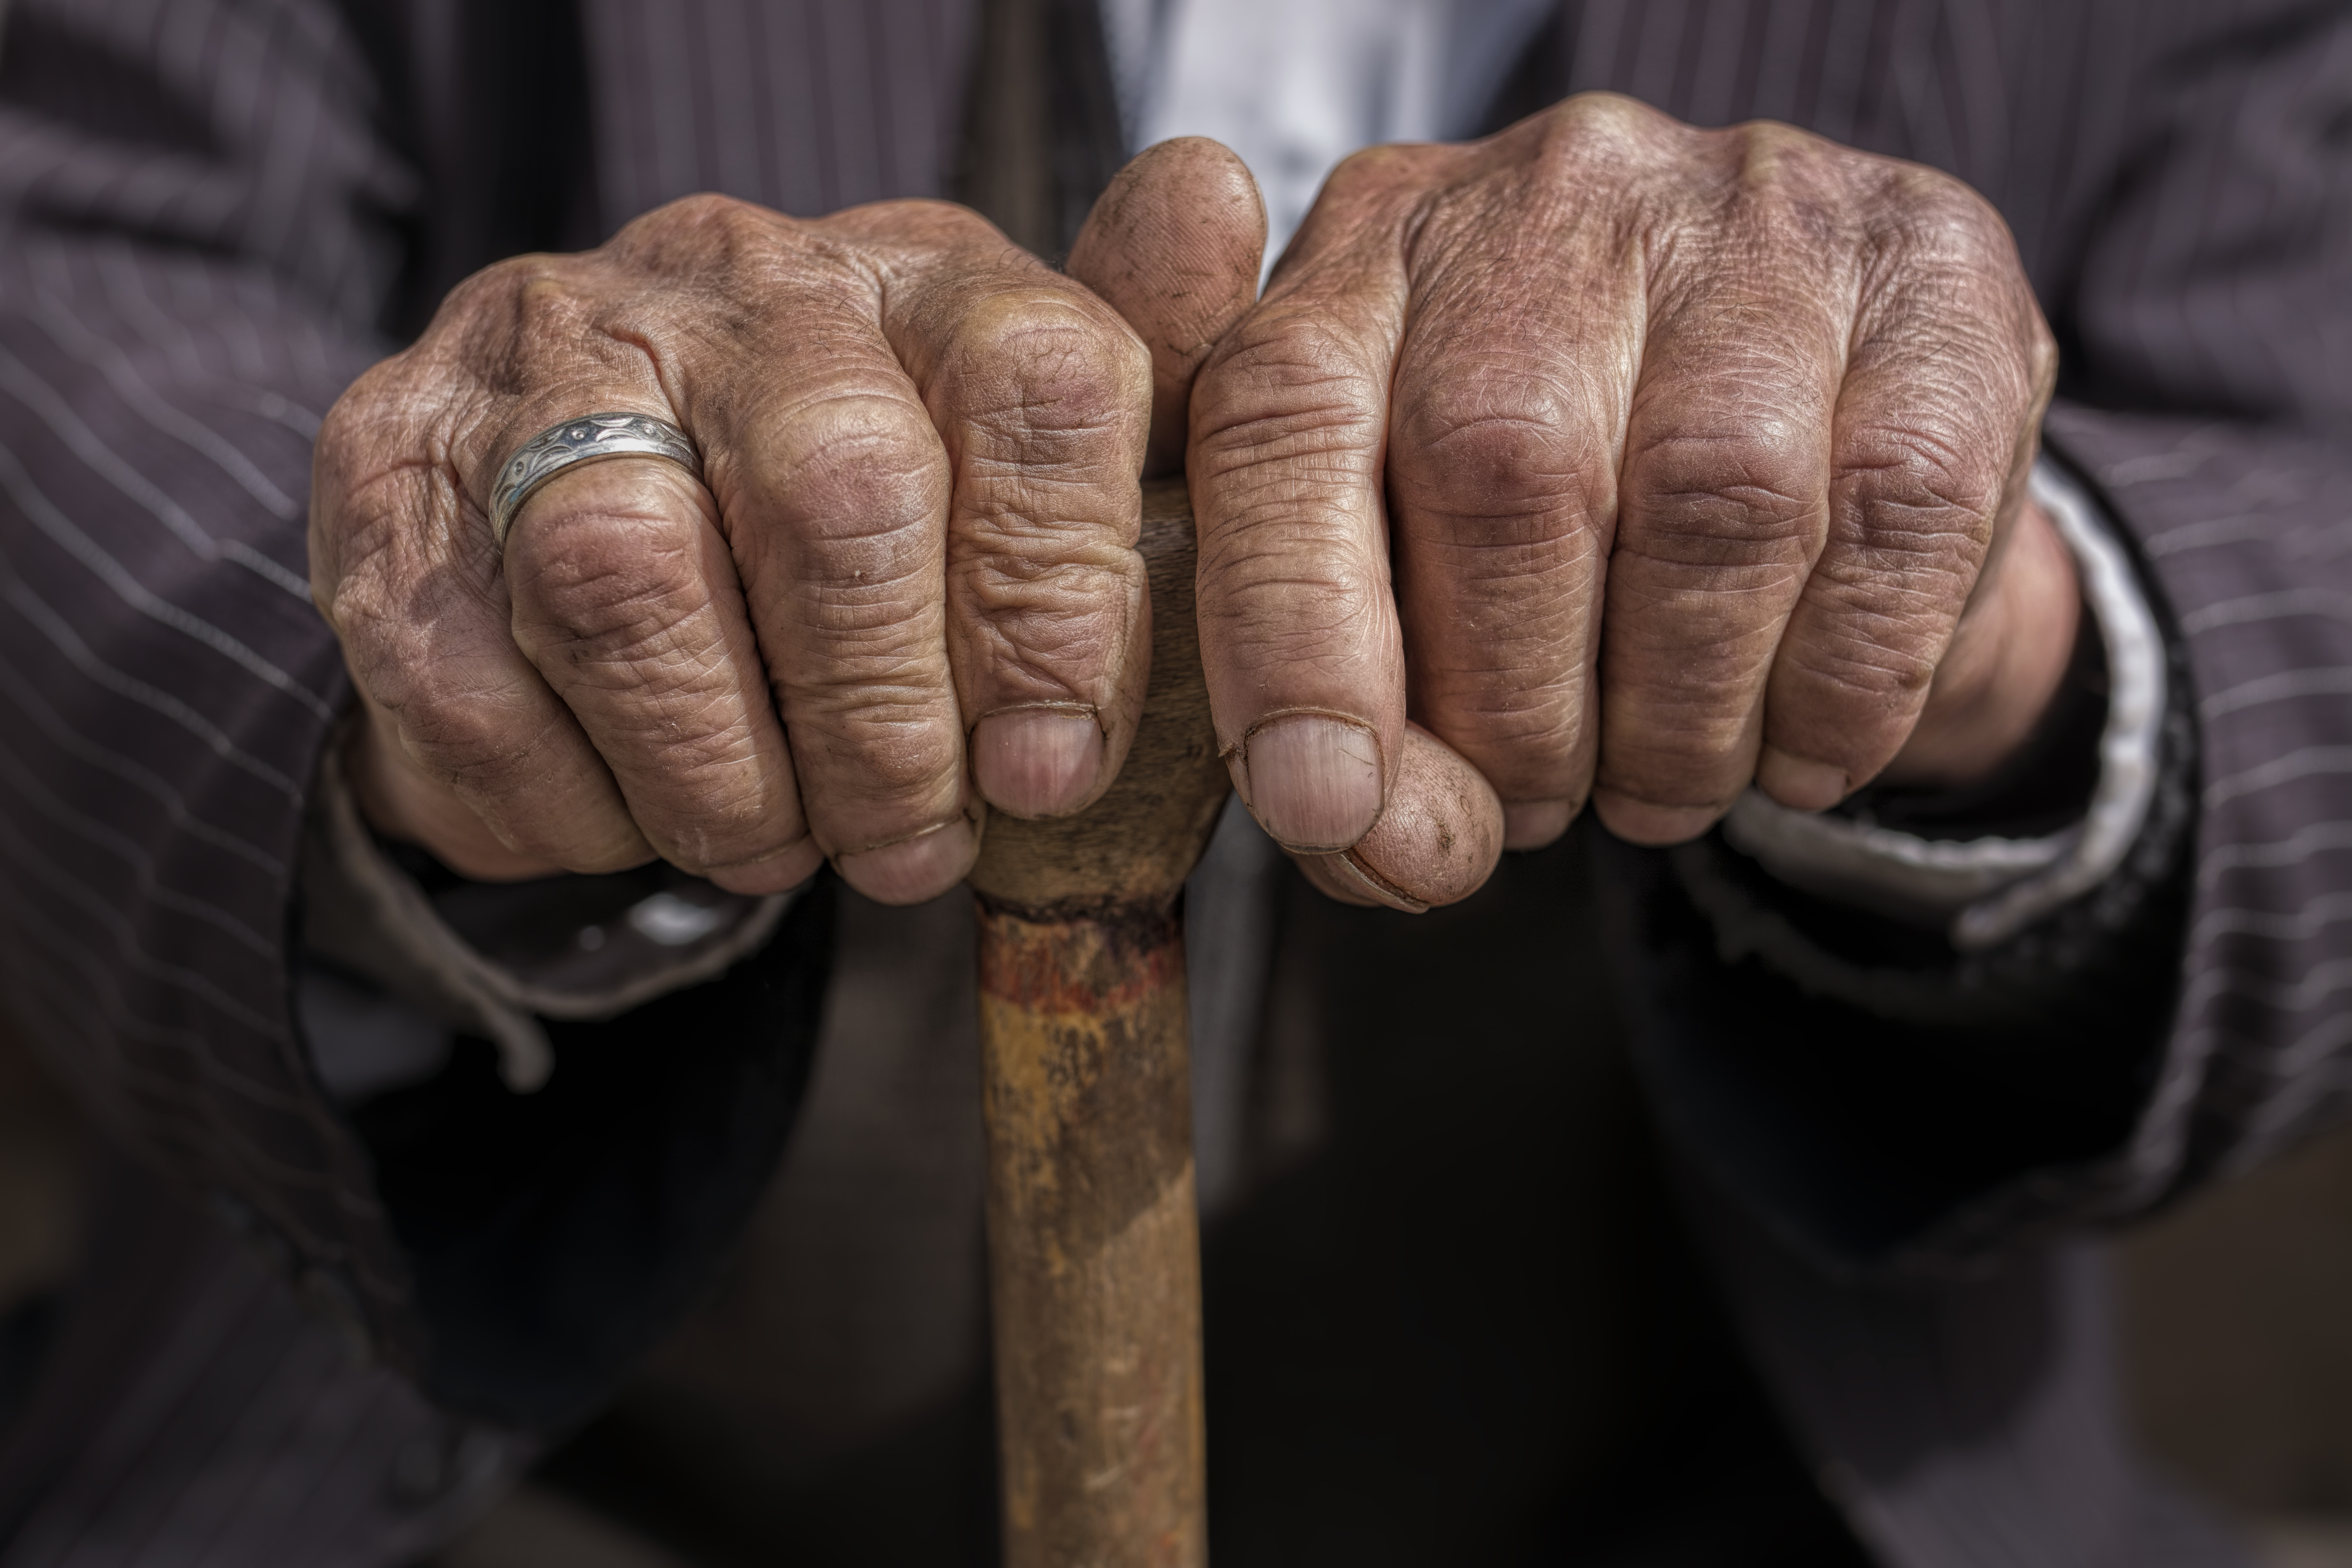 Cel mai bătrân bărbat din lume a murit la vârsta de 127 de ani. Familia a început demersurile oficiale la Cartea Recordurilor